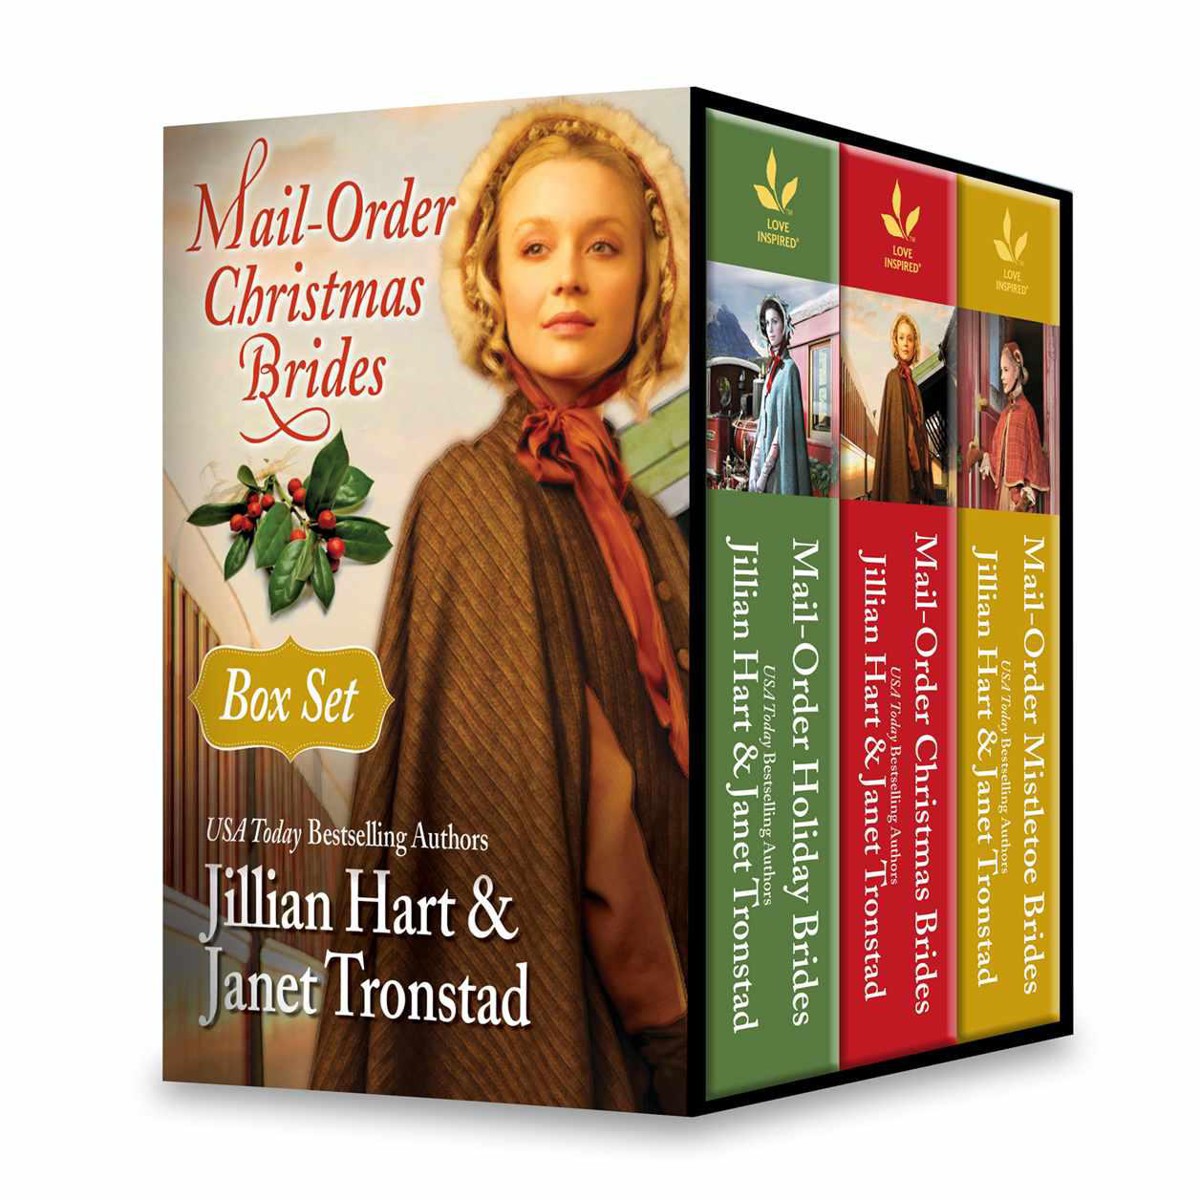 Mail-Order Christmas Brides Boxed Set by Jillian Hart